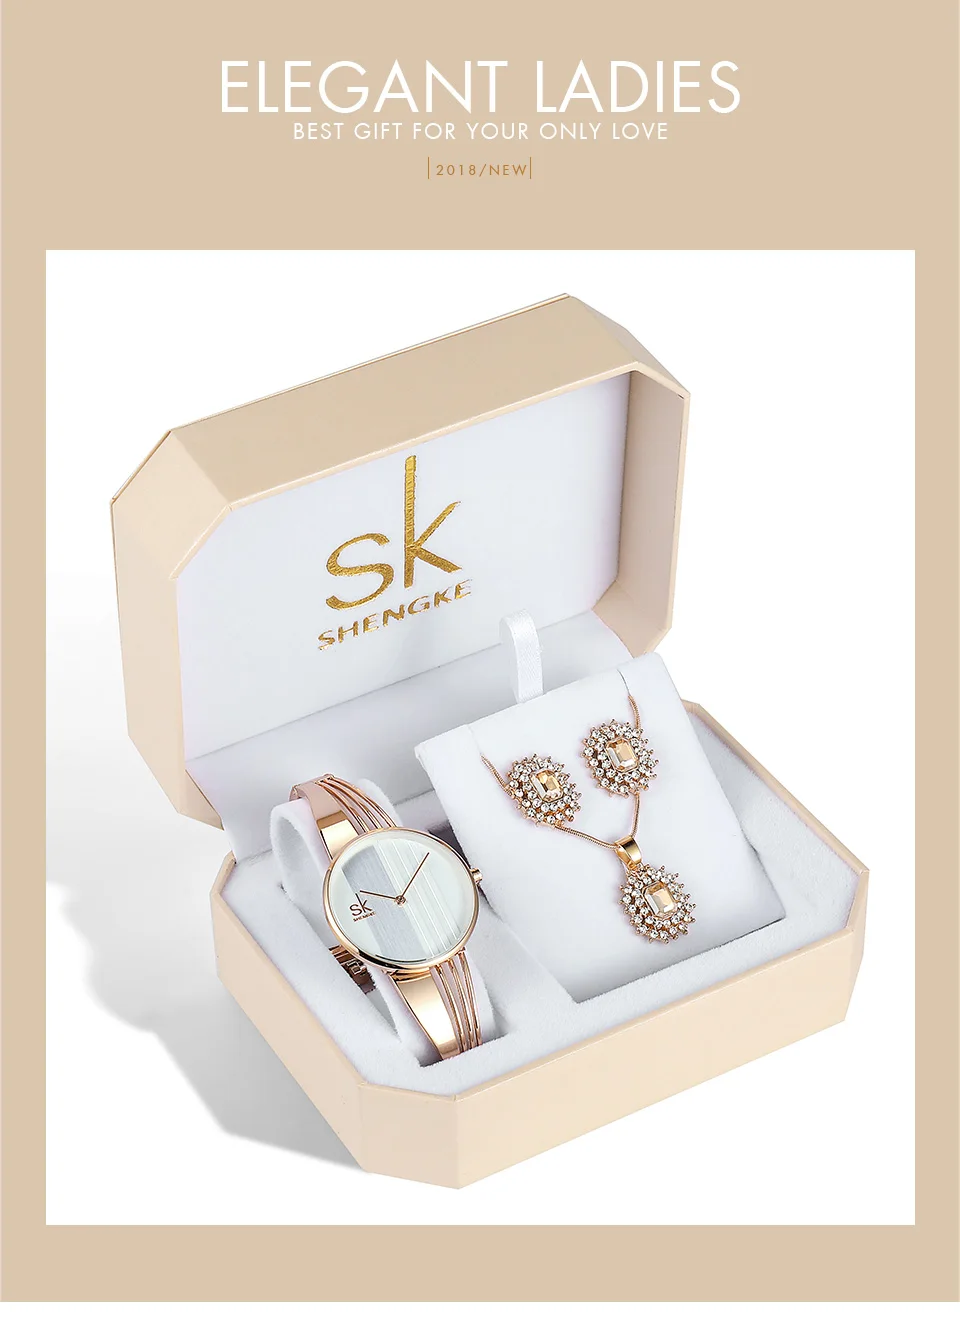 Shengke розового золота Необычные кварцевые часы для женщин серьги цепочки и ожерелья 2019 SK дамы часы комплект ювелирных изделий роскошный